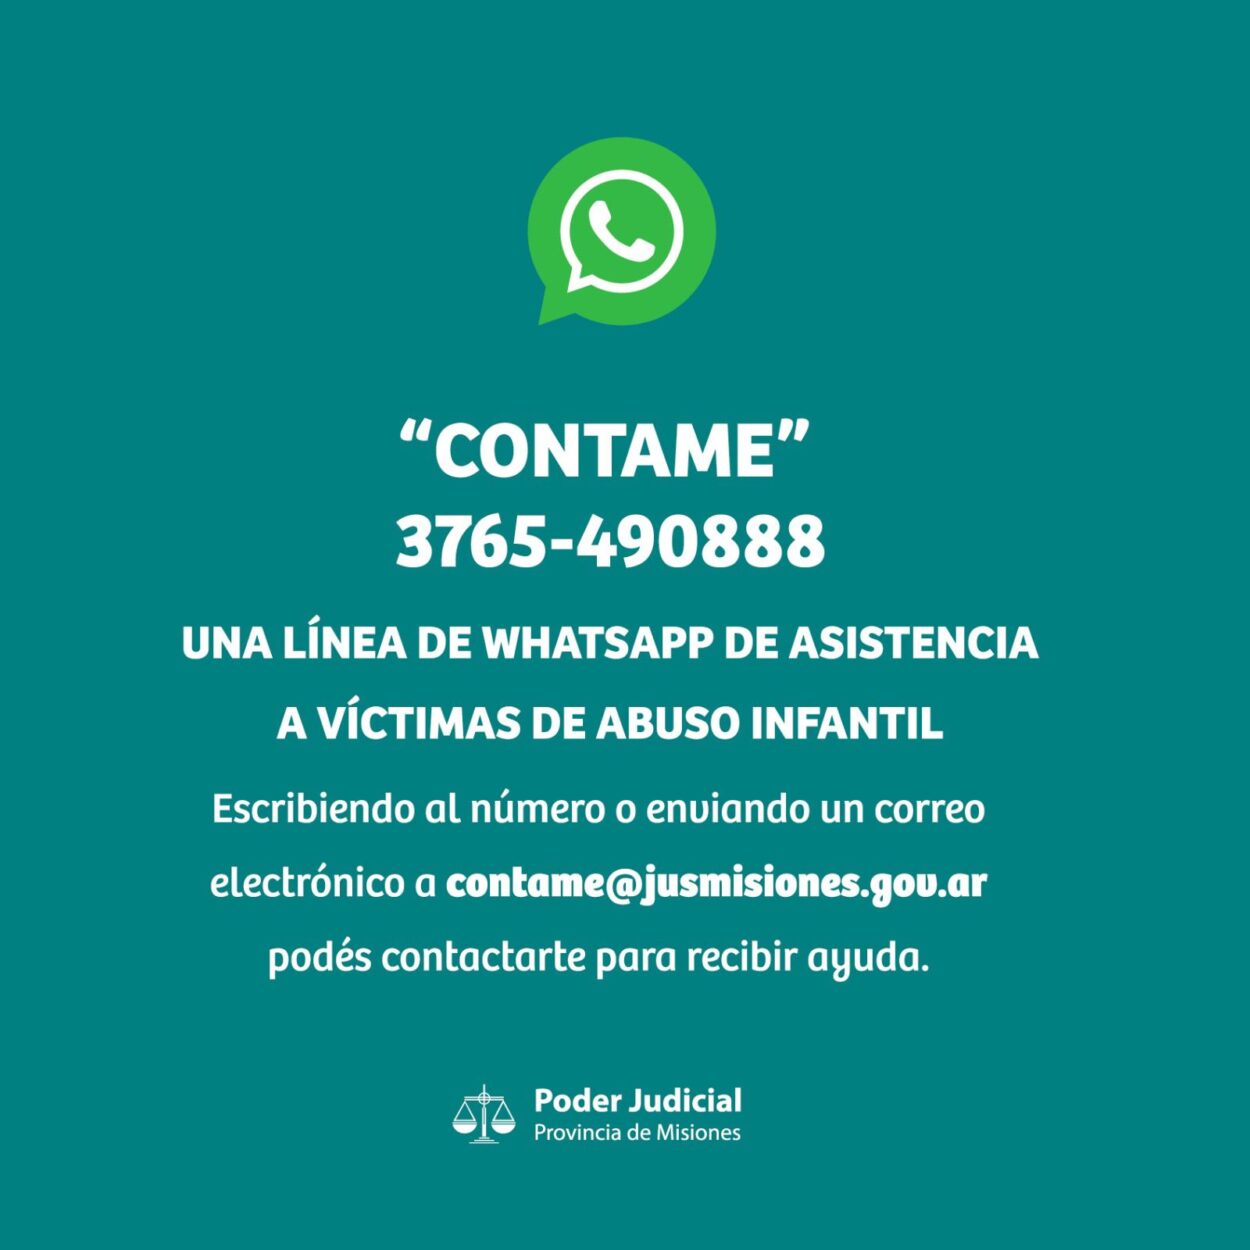 “Contame”: una línea de WhatsApp de asistencia a víctimas de abuso infantil imagen-58